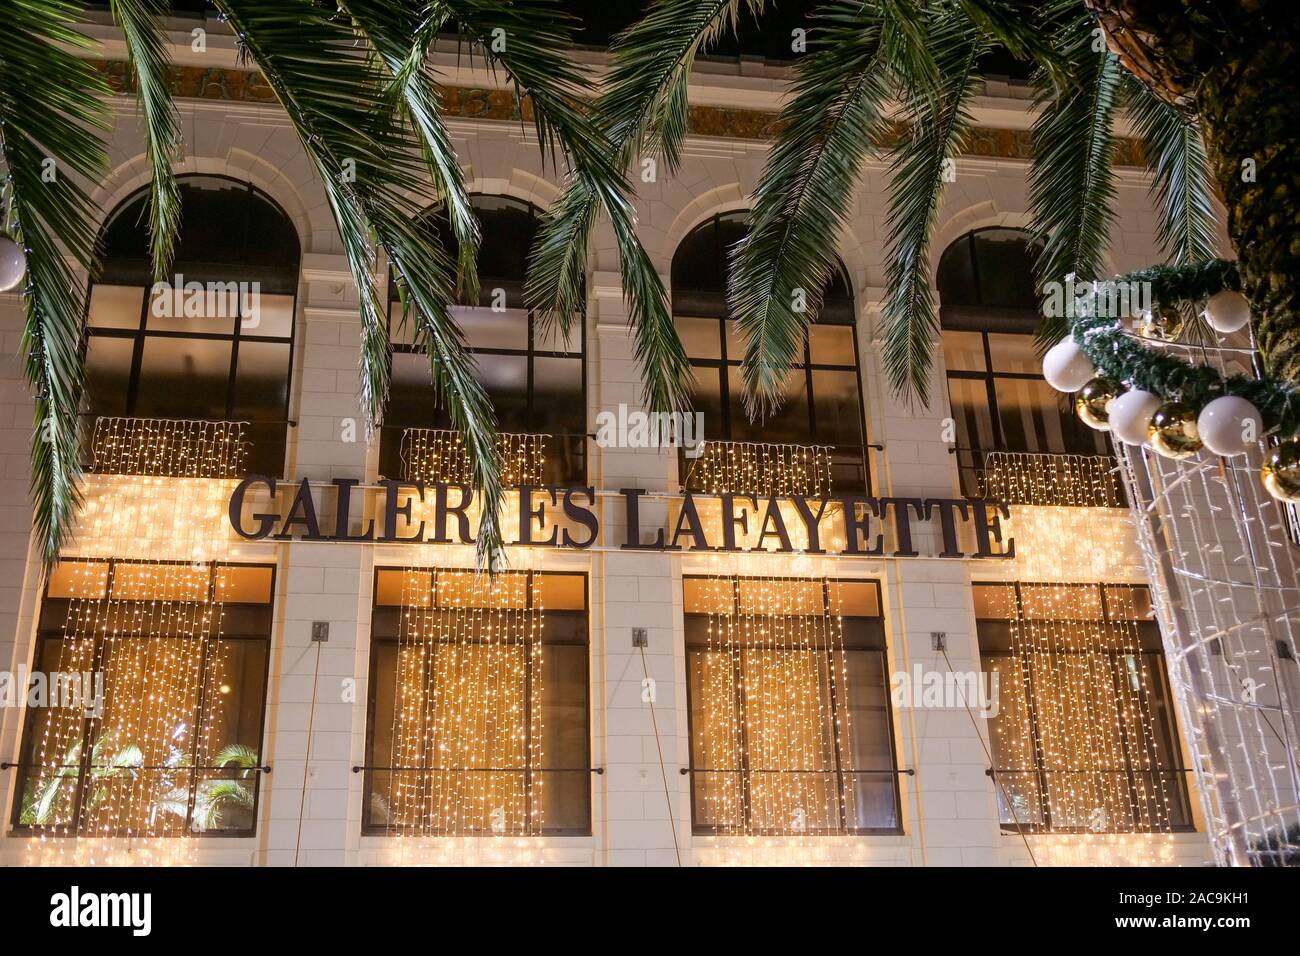 Galeies Lafayette, Place Georges Clemenceau, Biarritz, Pyrénées-Atlantiques, France Stock Photo